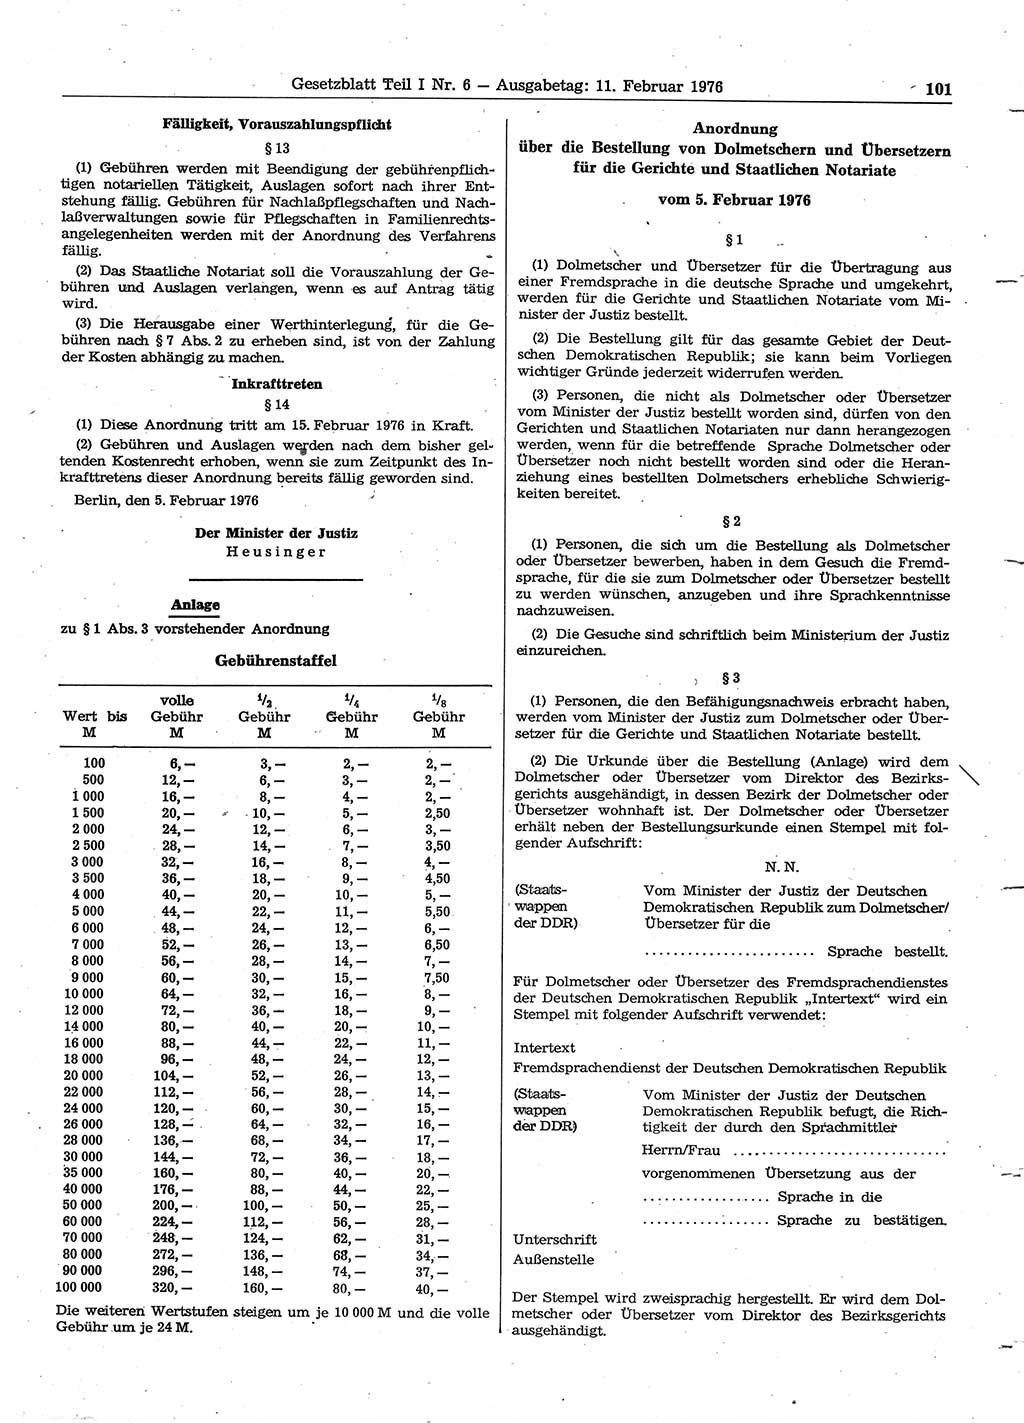 Gesetzblatt (GBl.) der Deutschen Demokratischen Republik (DDR) Teil Ⅰ 1976, Seite 101 (GBl. DDR Ⅰ 1976, S. 101)